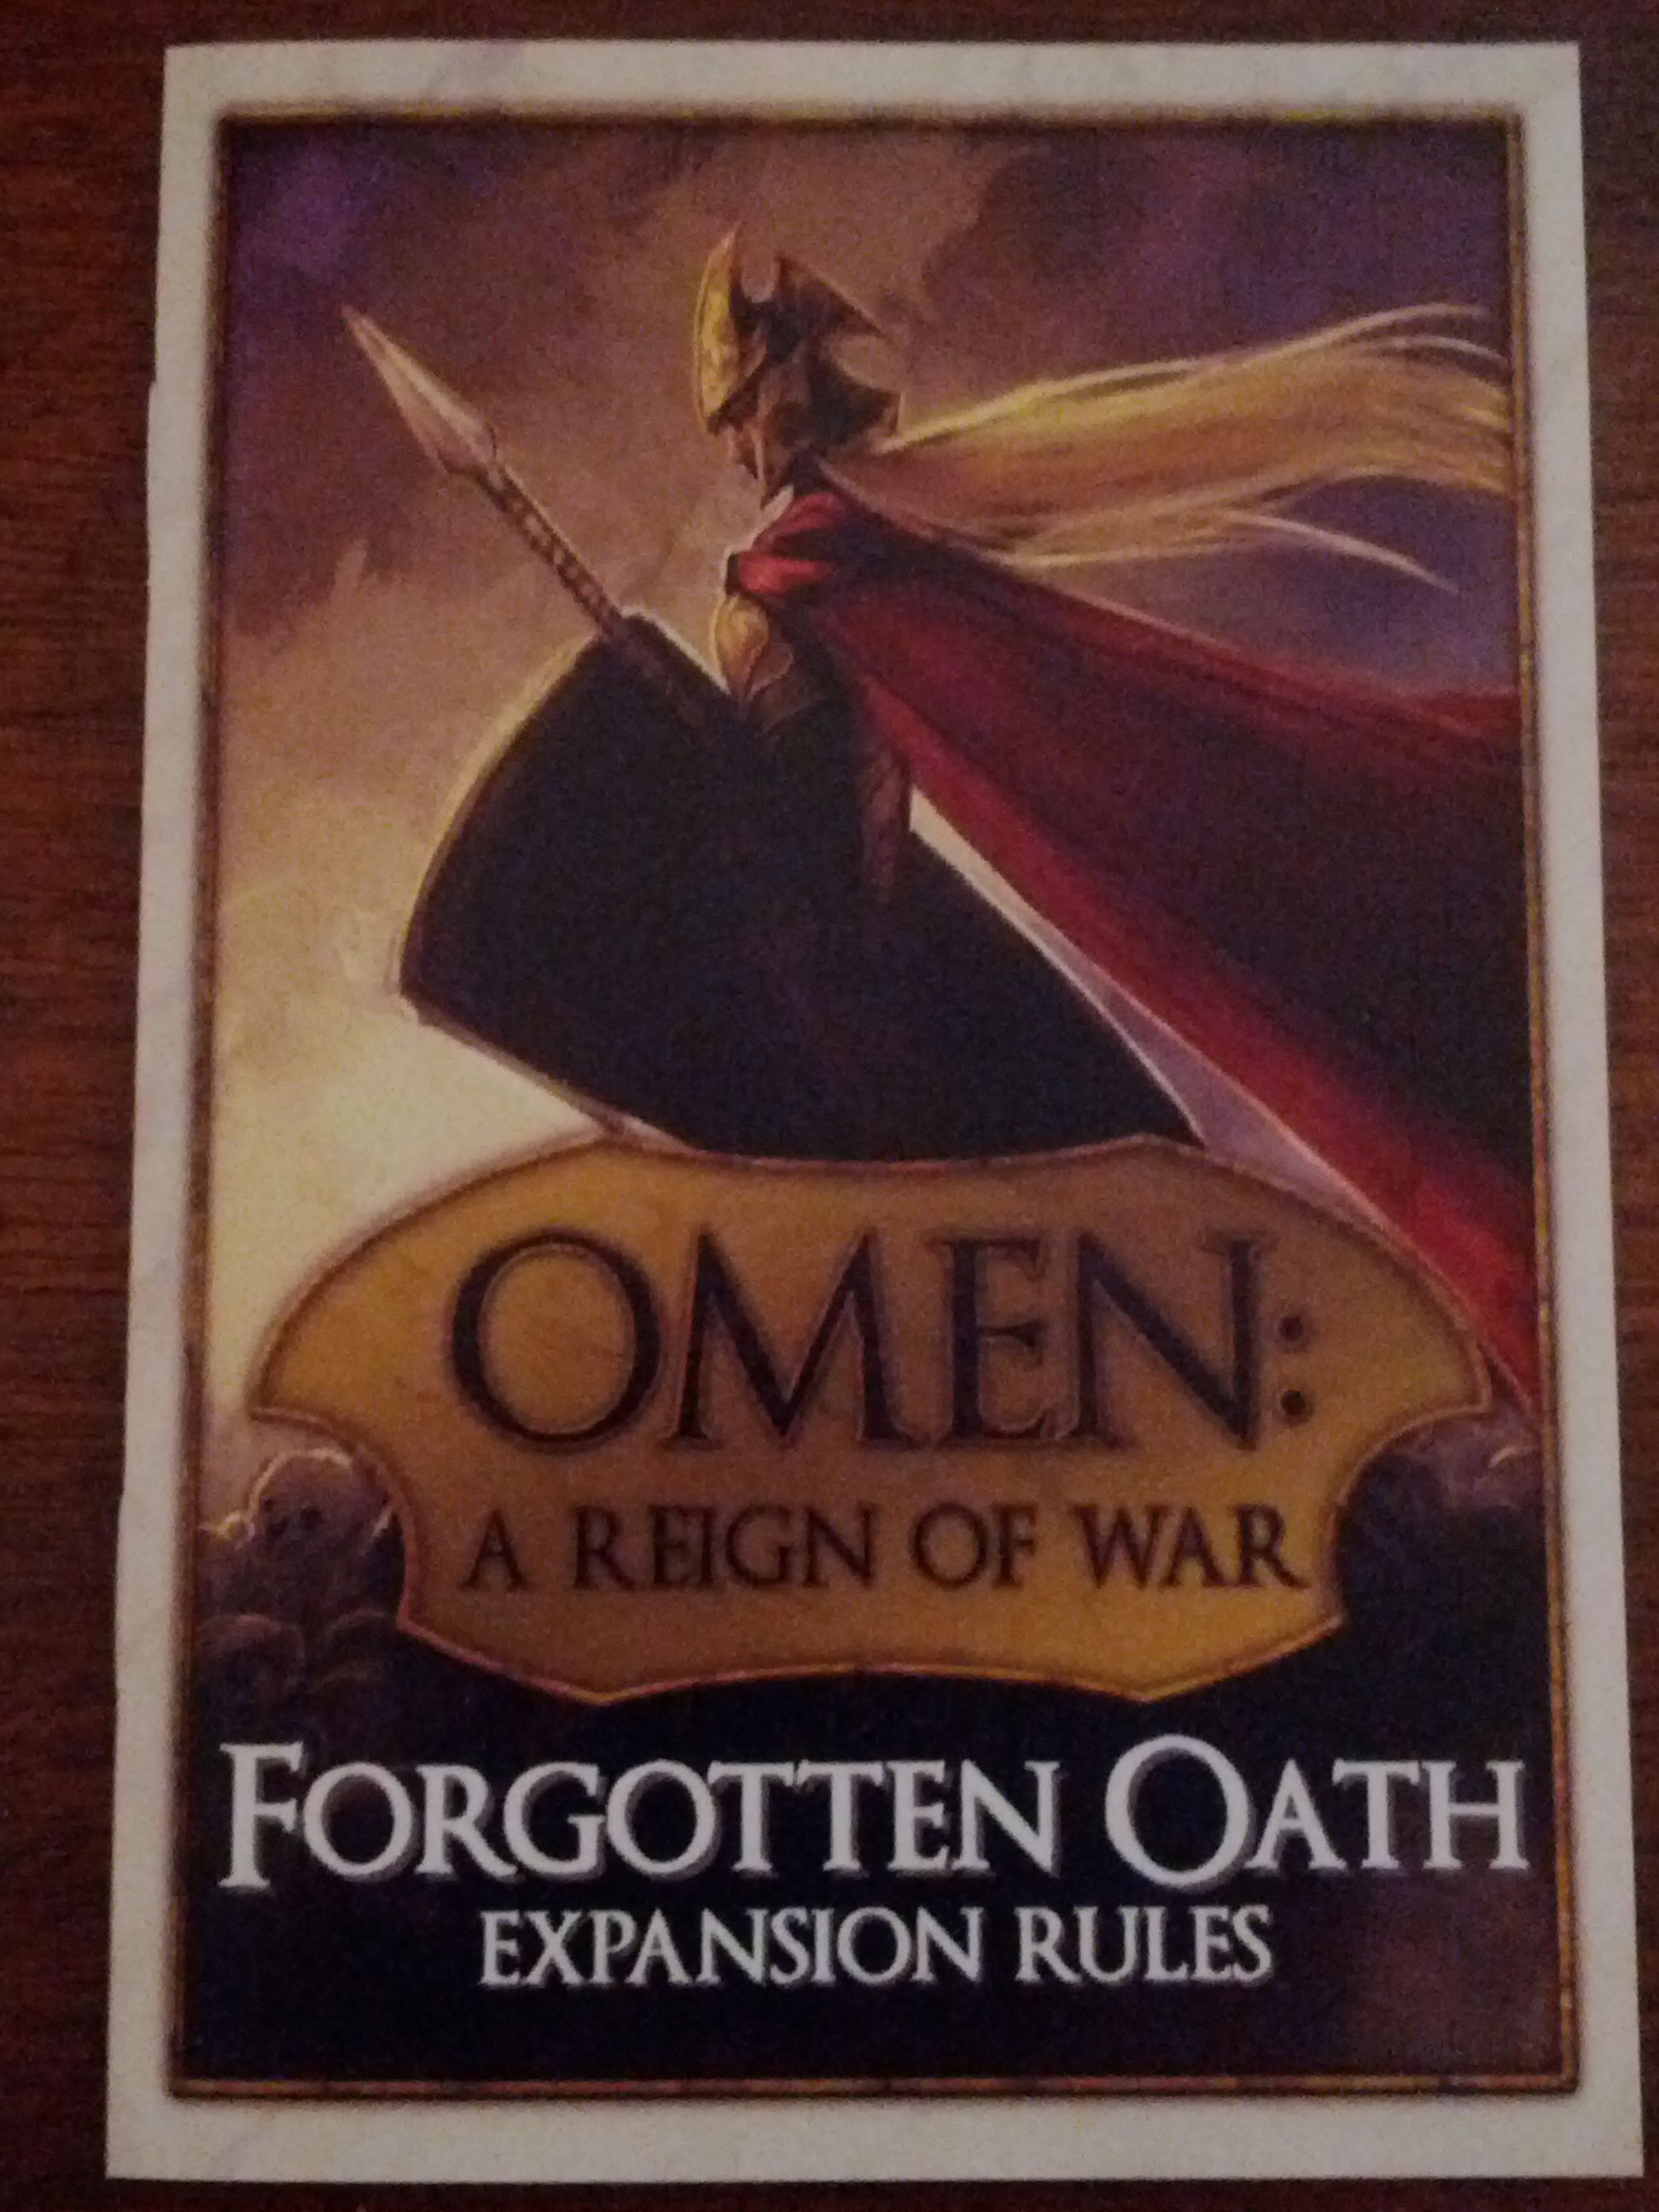 Omen: A Reign of War – Forgotten Oath